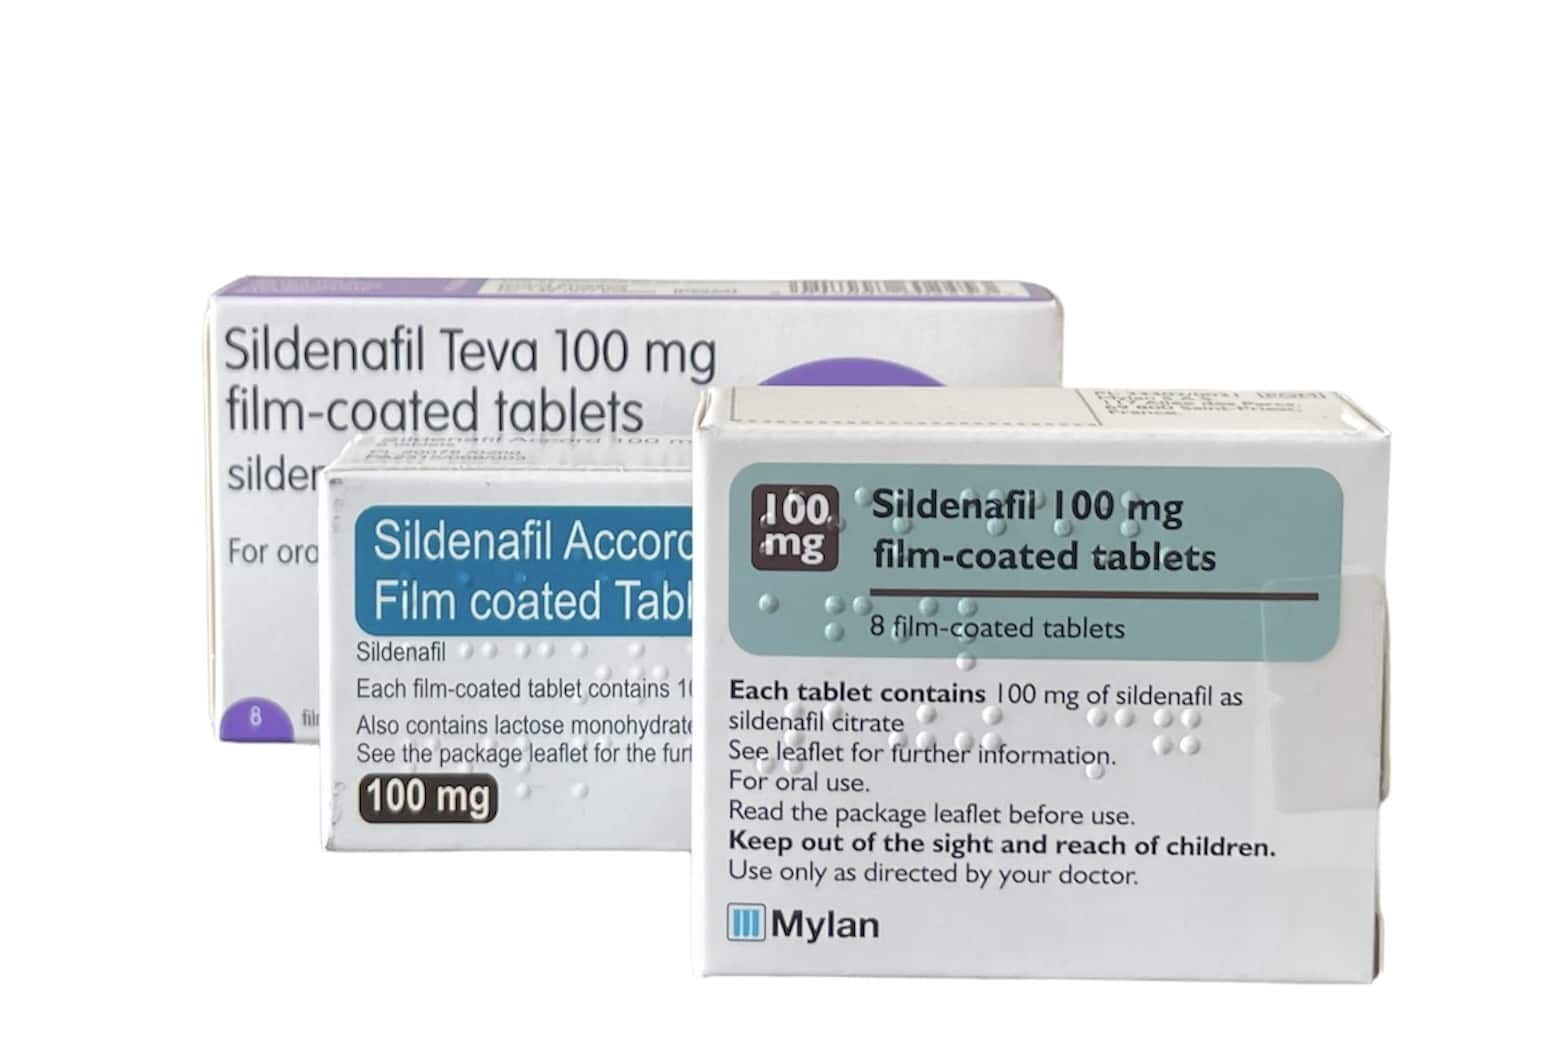 Sildenafil tablets 100mg